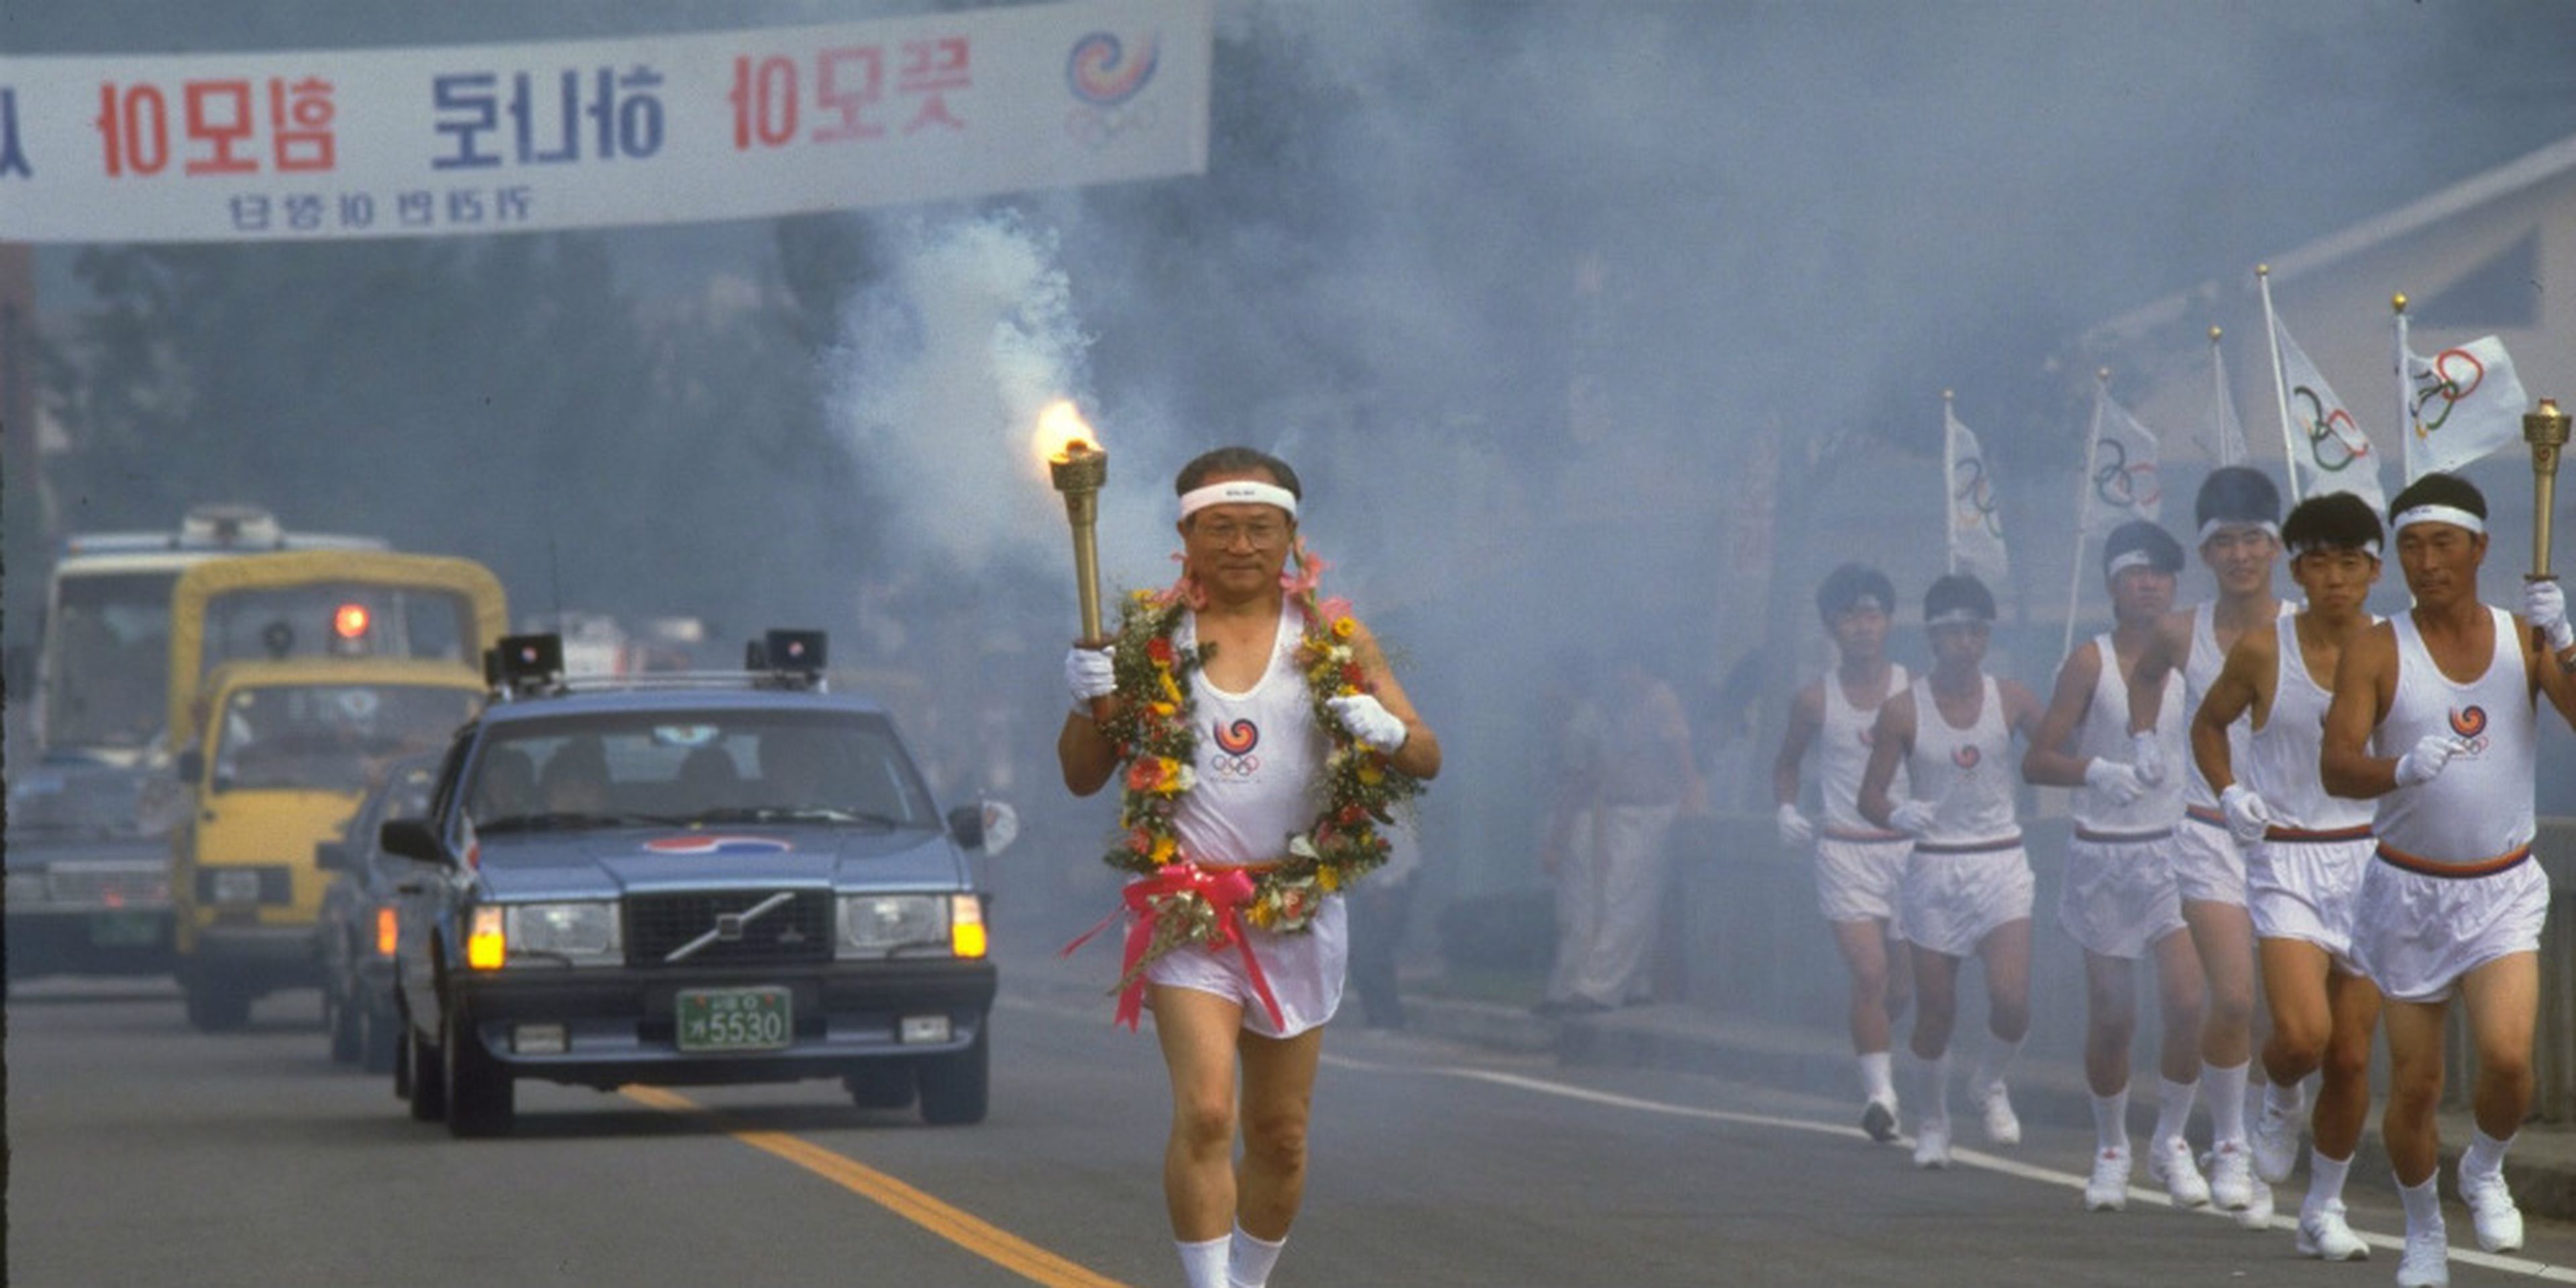 JJOO COREA DEL SUR 1988-Antorcha olímpica